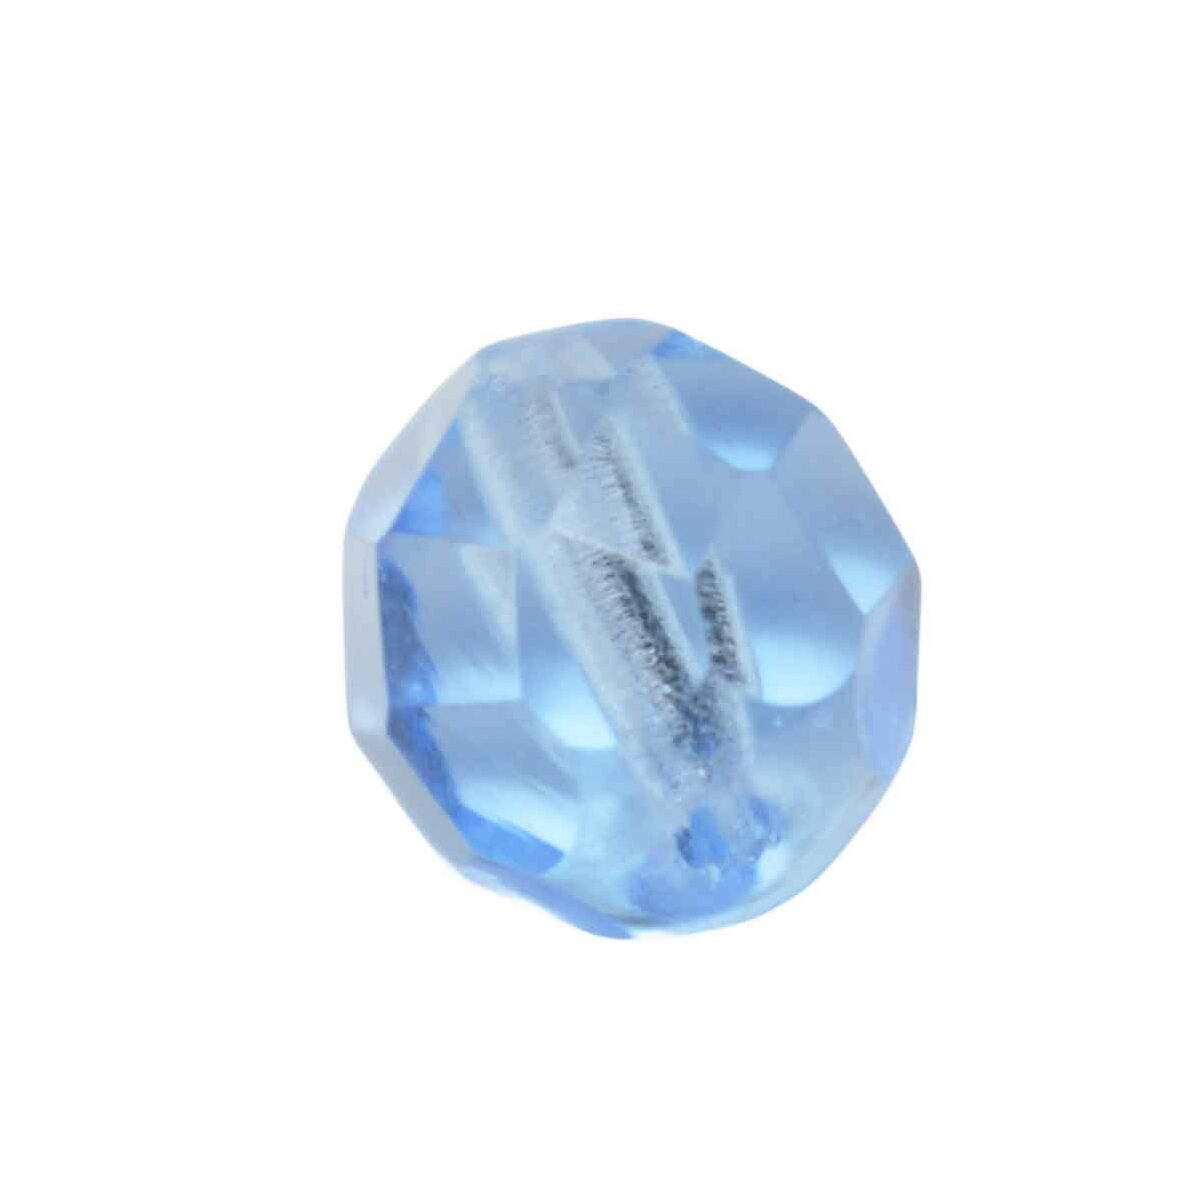 Lichtblauwe facetgeslepen glaskraal